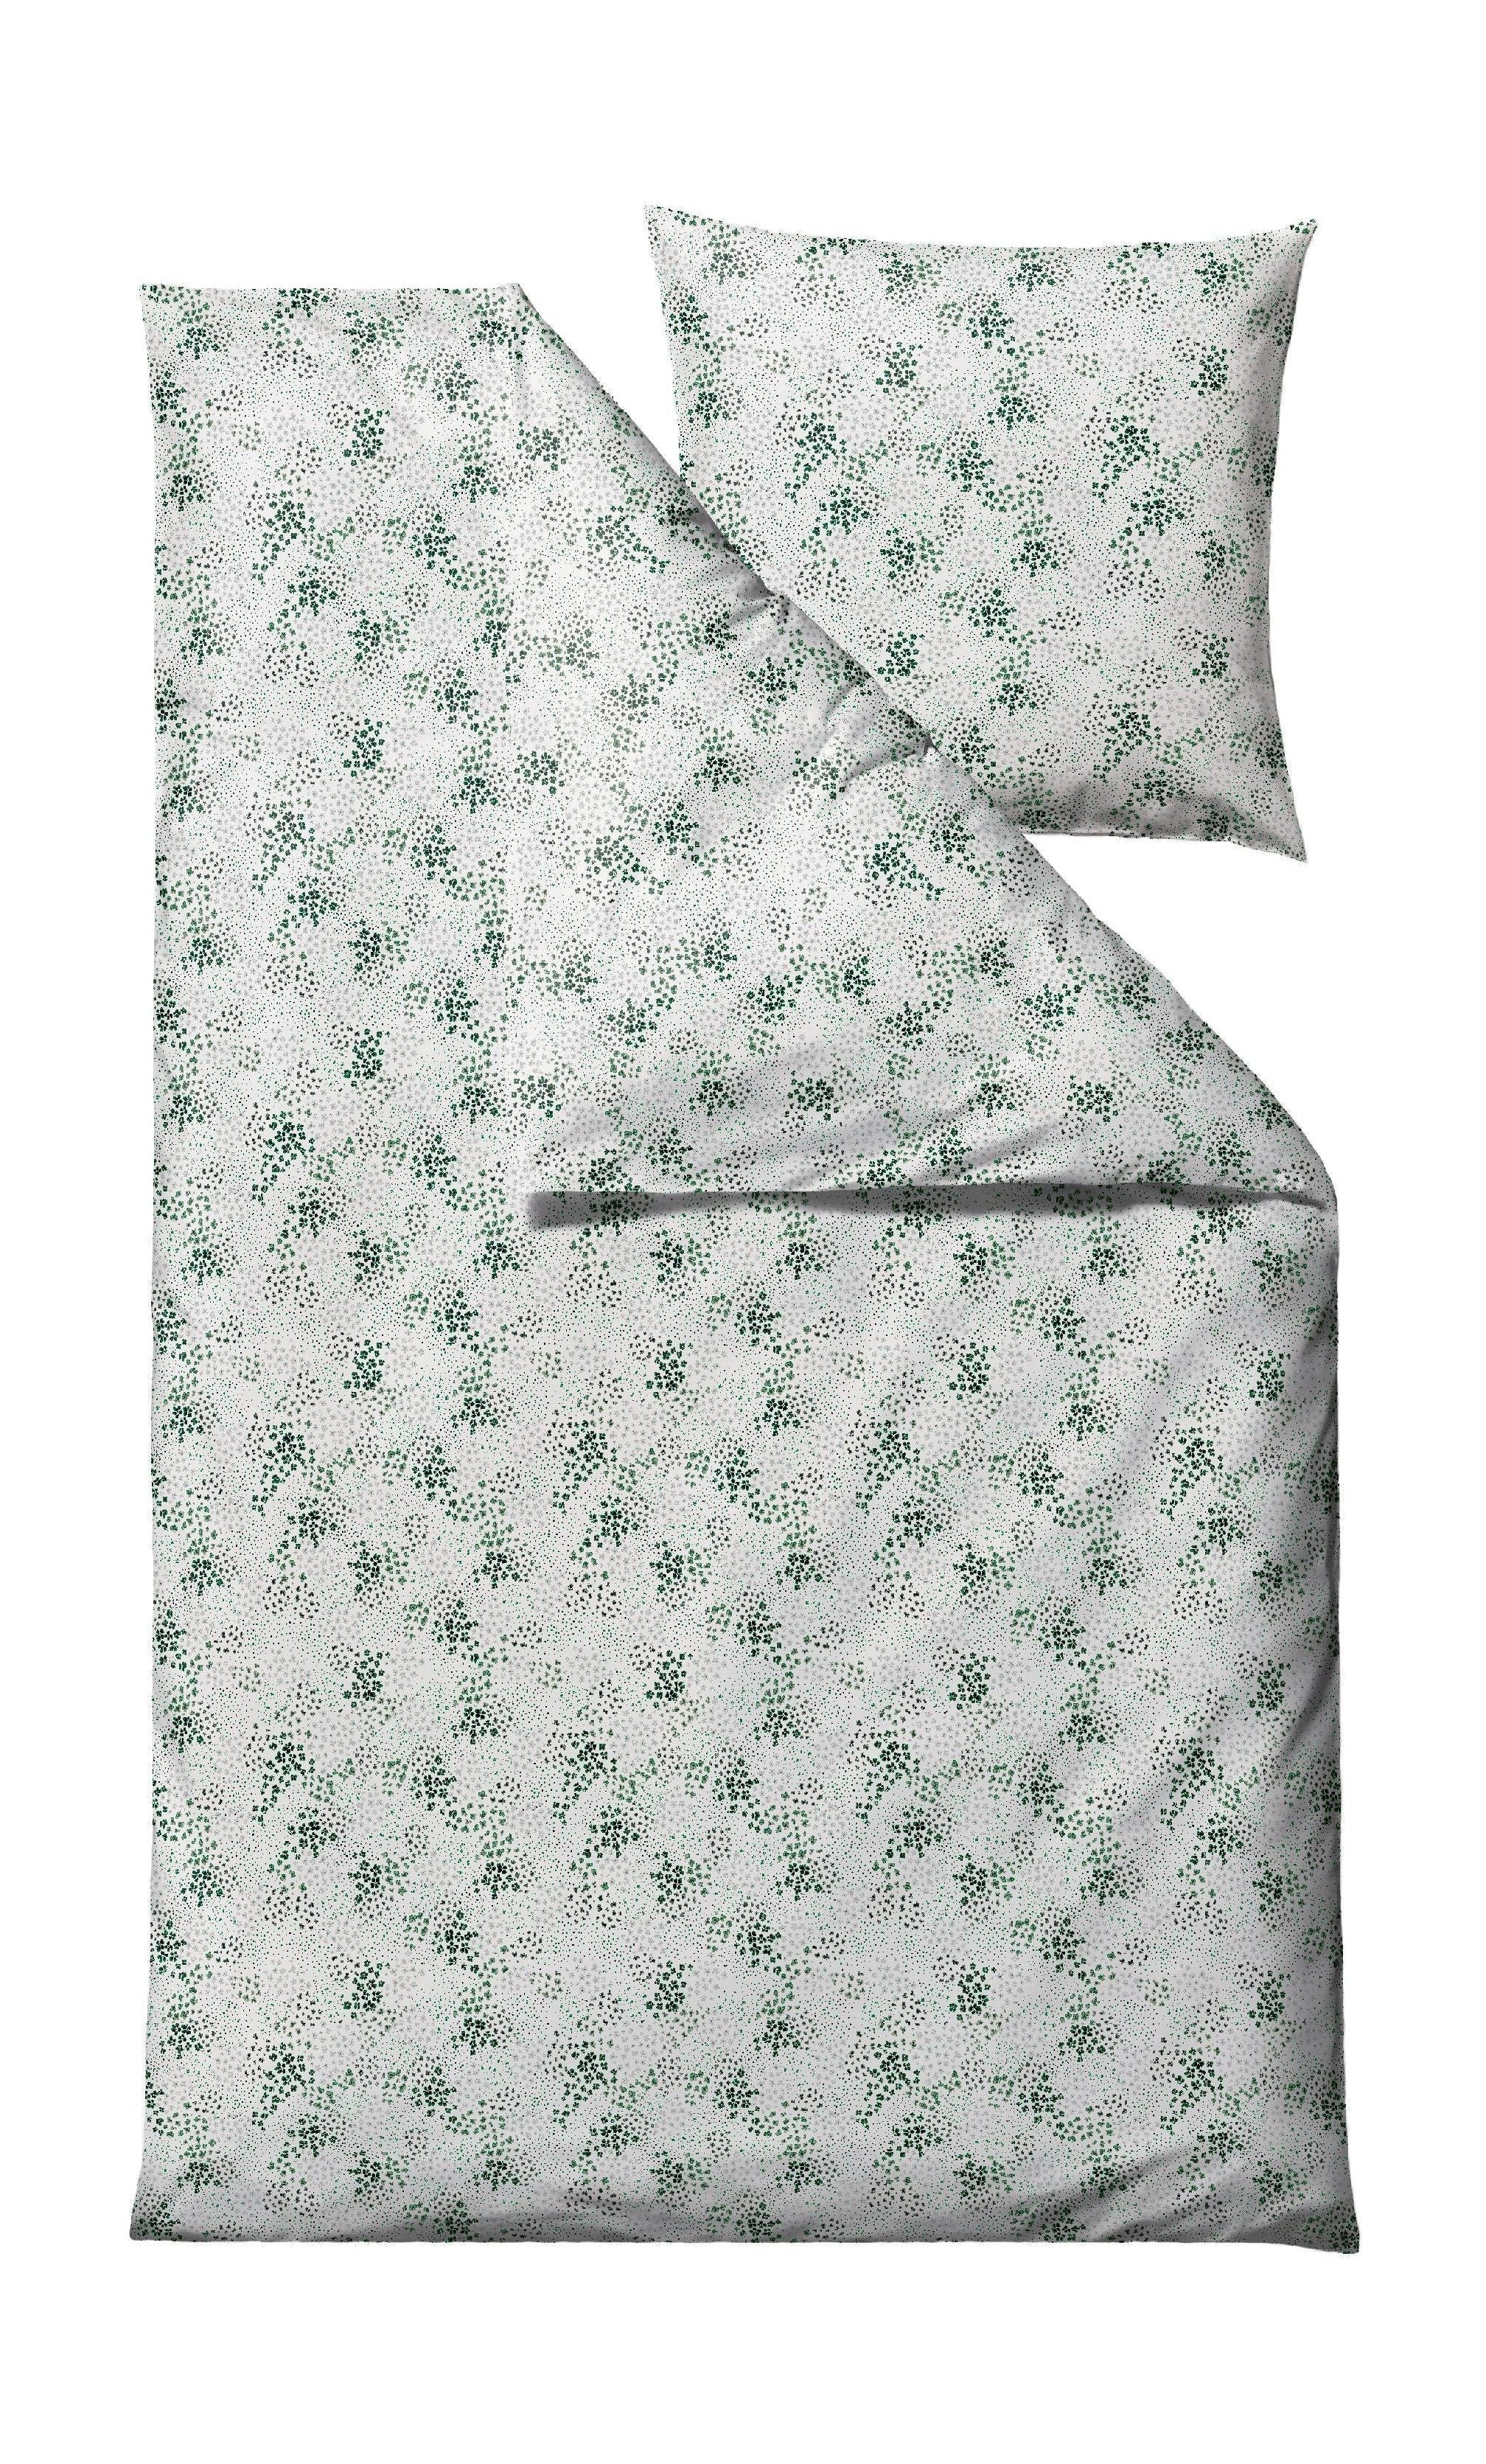 Södahl Viola -Bett -Leinen 140 x 220 cm, grün